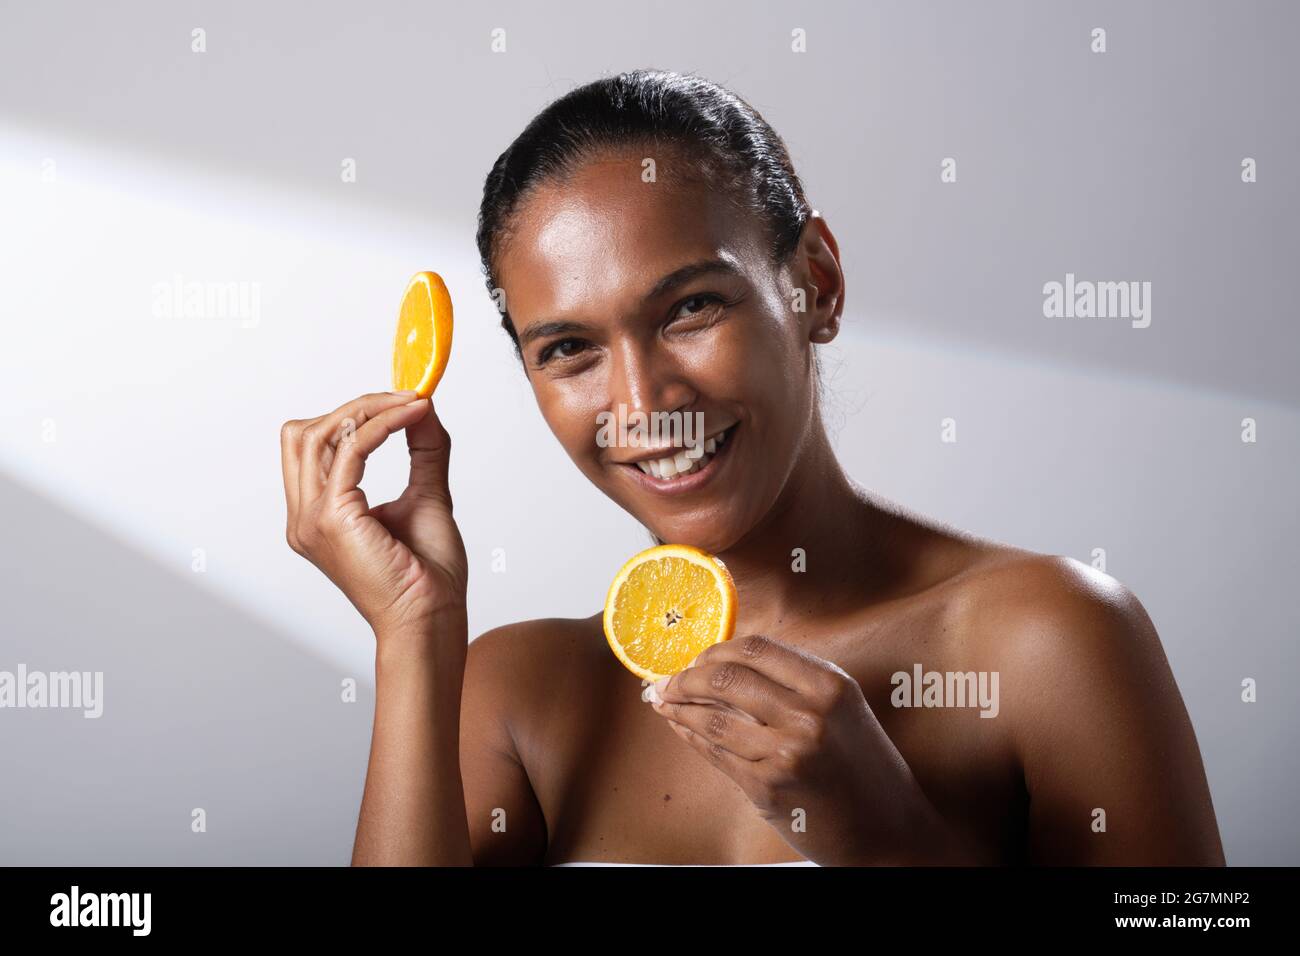 Immagini di bellezza di una donna con tonalità della pelle più scura. Foto di testa e spalla di sorridente, felice signora. Tenendo una fetta di frutta arancione. Foto Stock